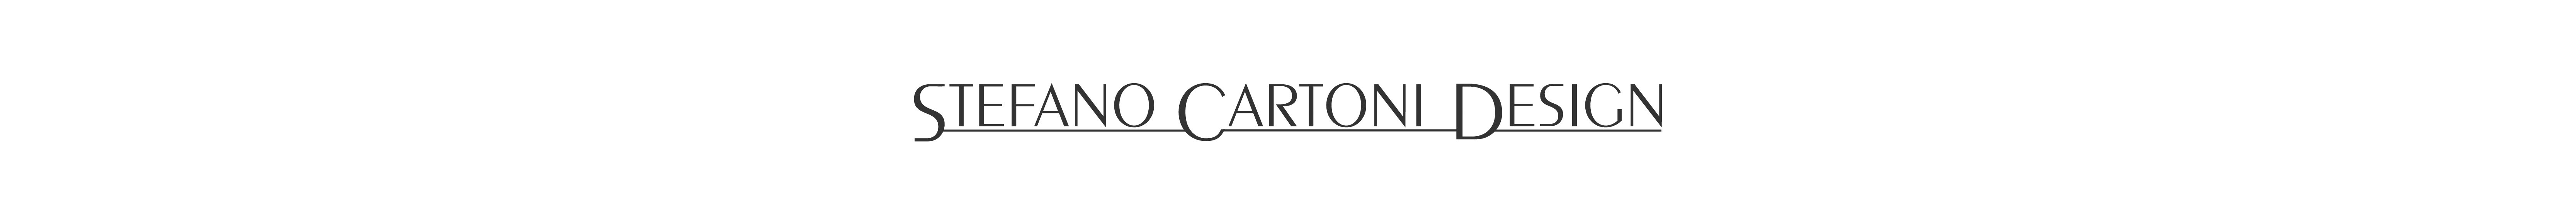 Stefano Cartoni's profile banner